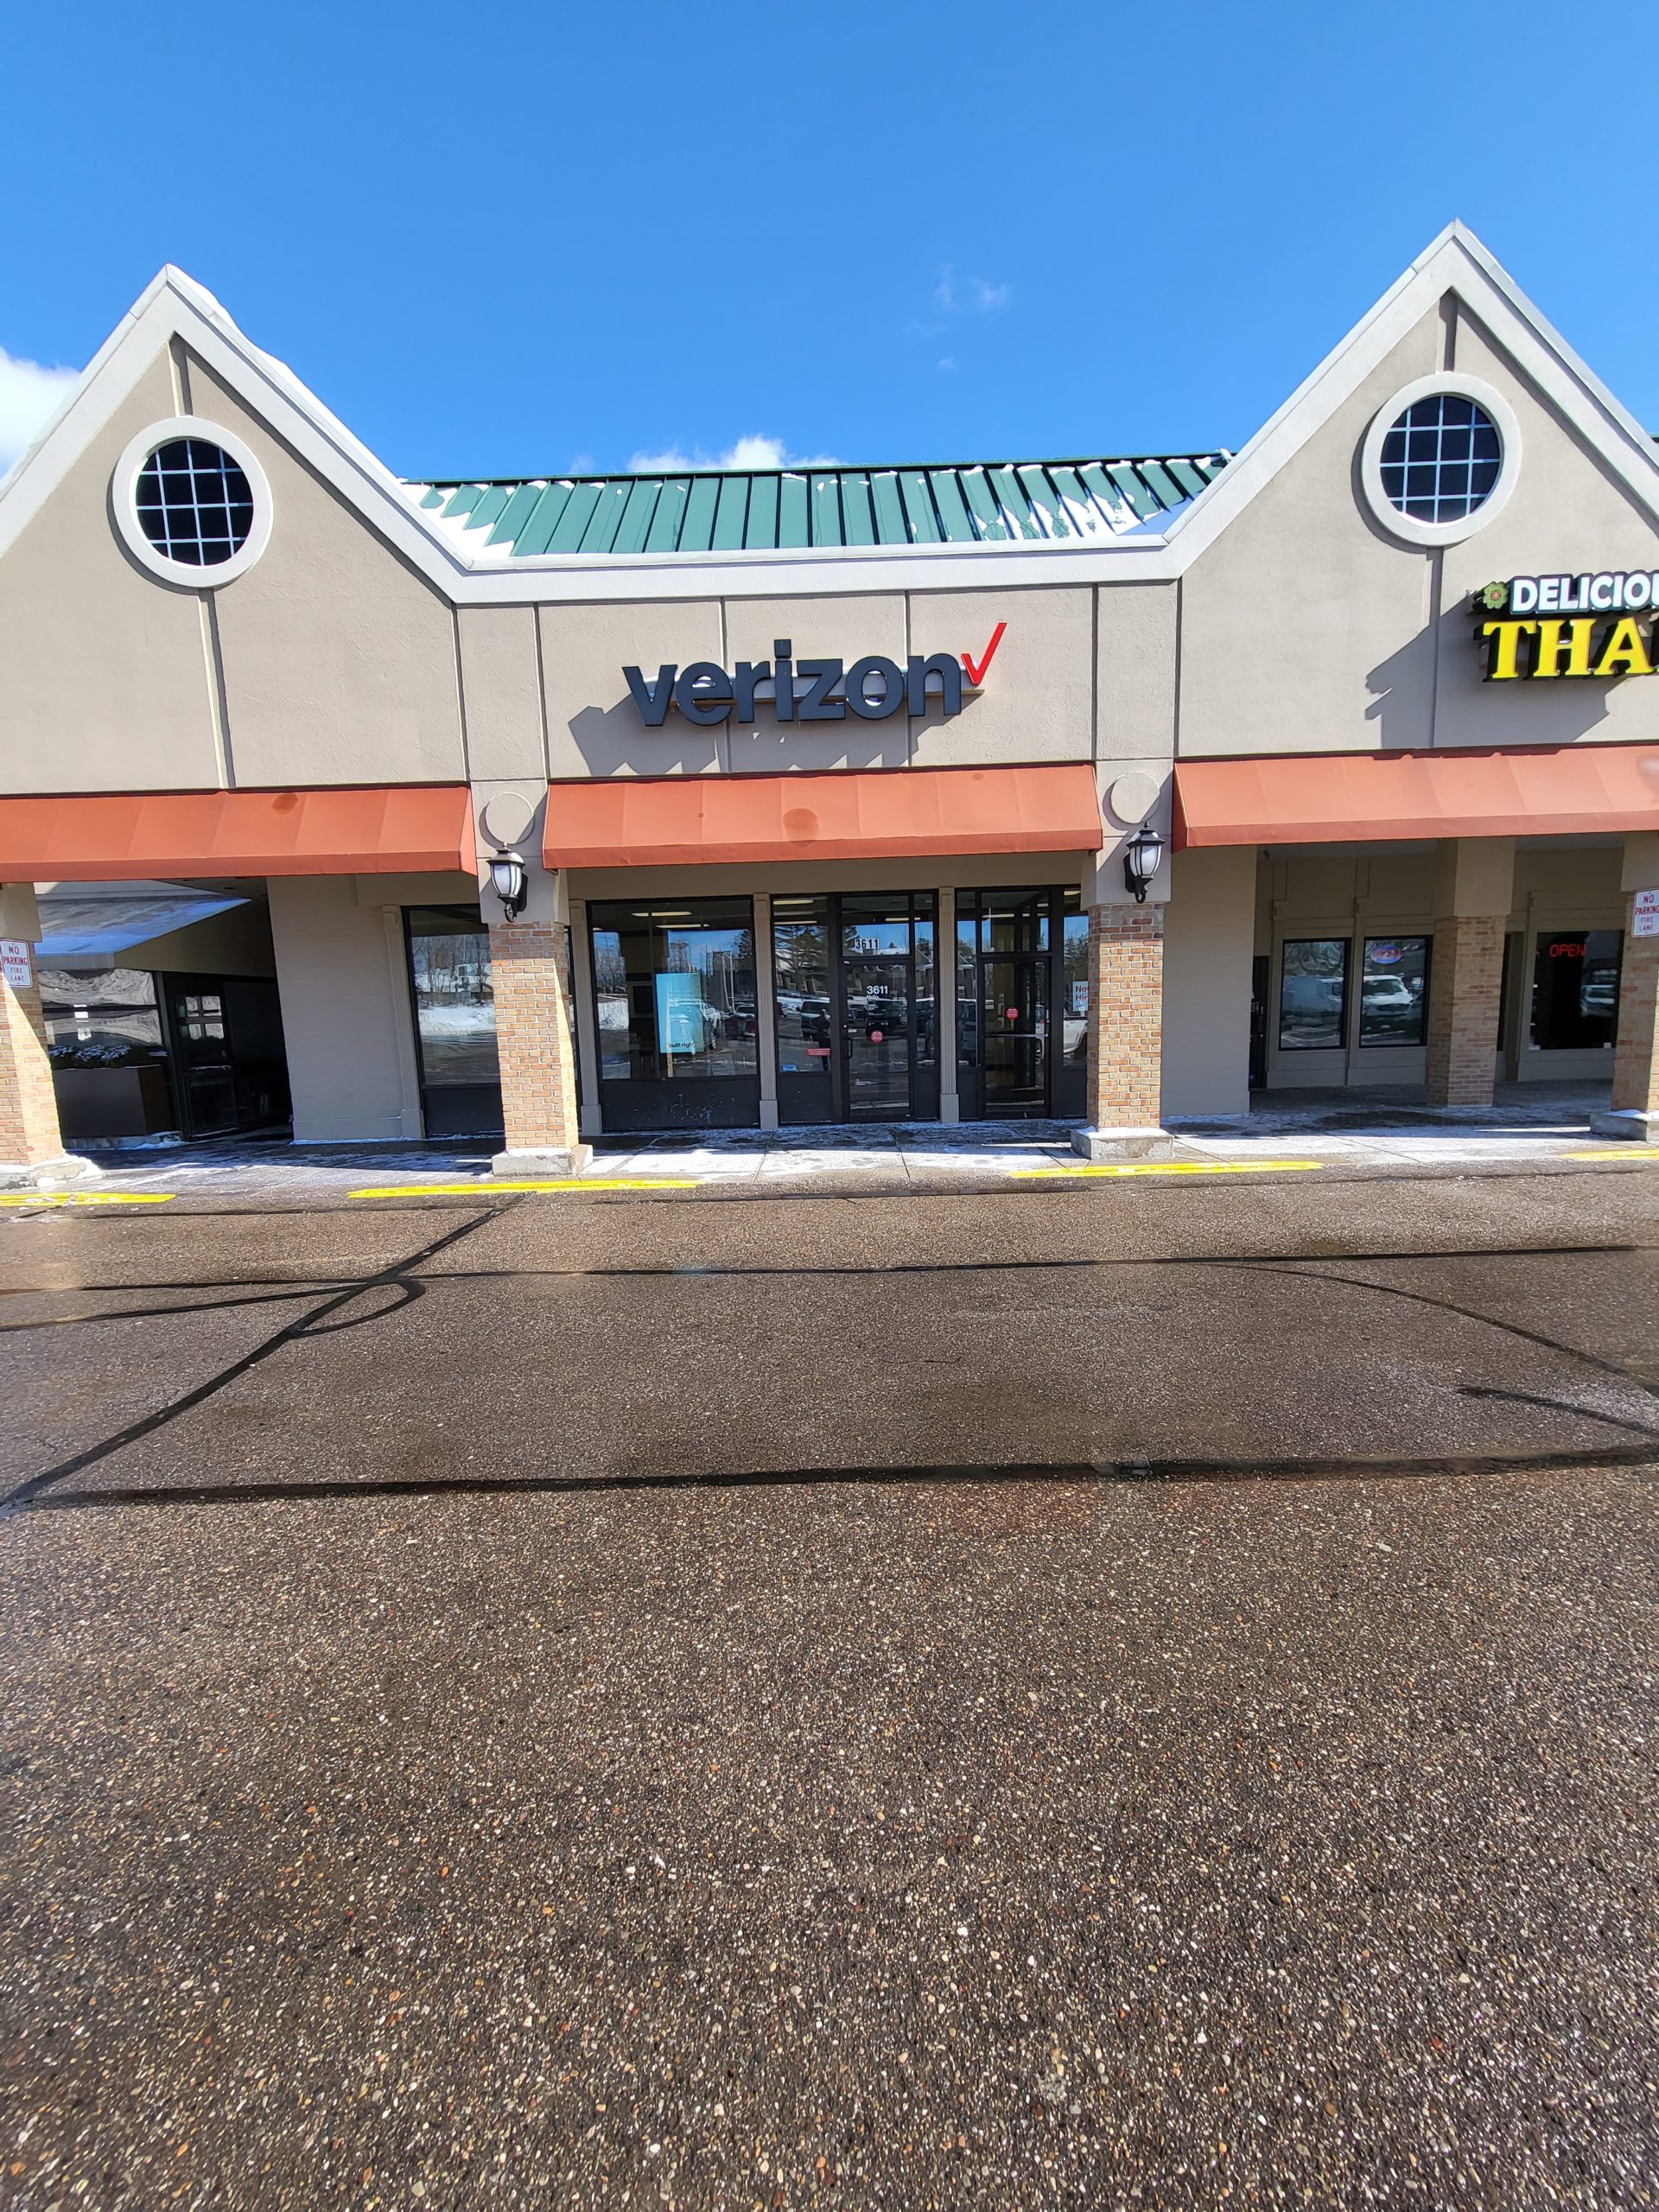 Verizon's store on Michigan Avenue is closed